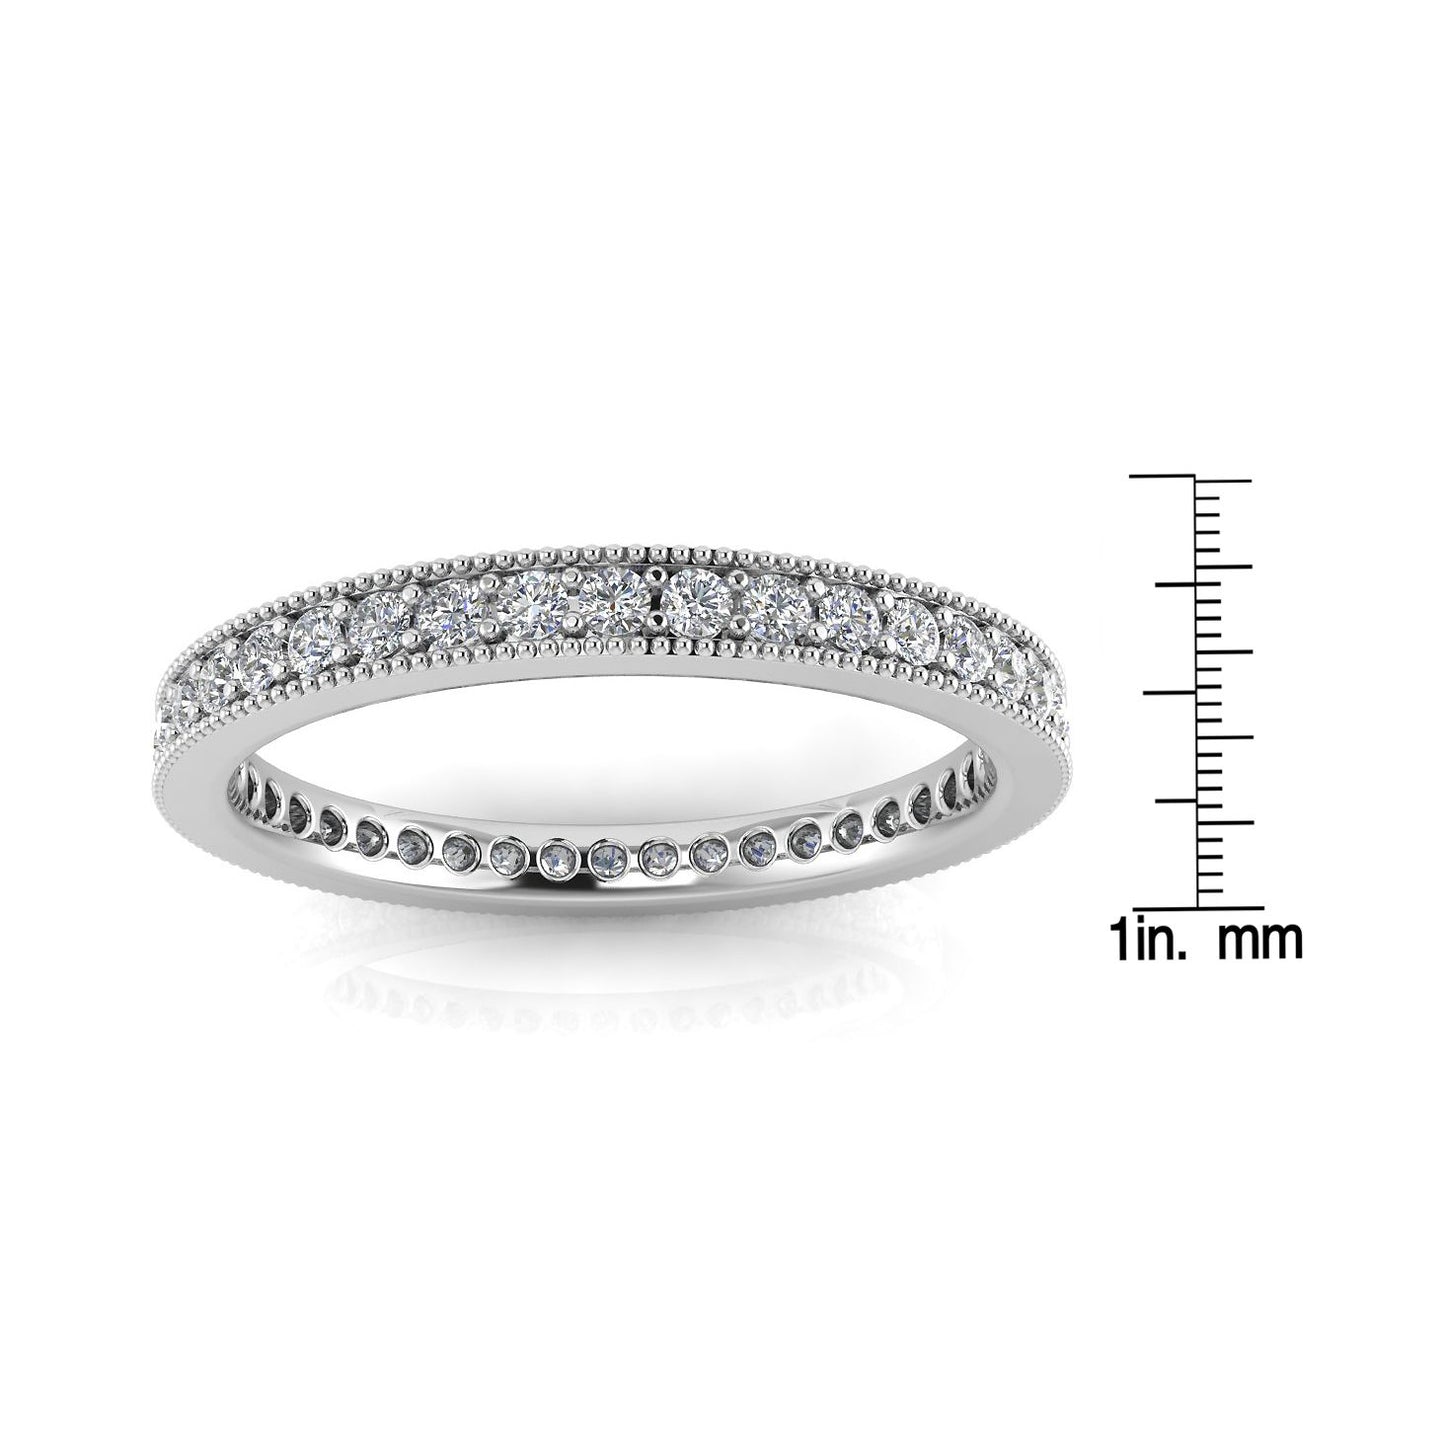 Round Brilliant Cut Diamond Pave & Milgrain Set Eternity Ring In Platinum  (0.92ct. Tw.) Ring Size 5.5